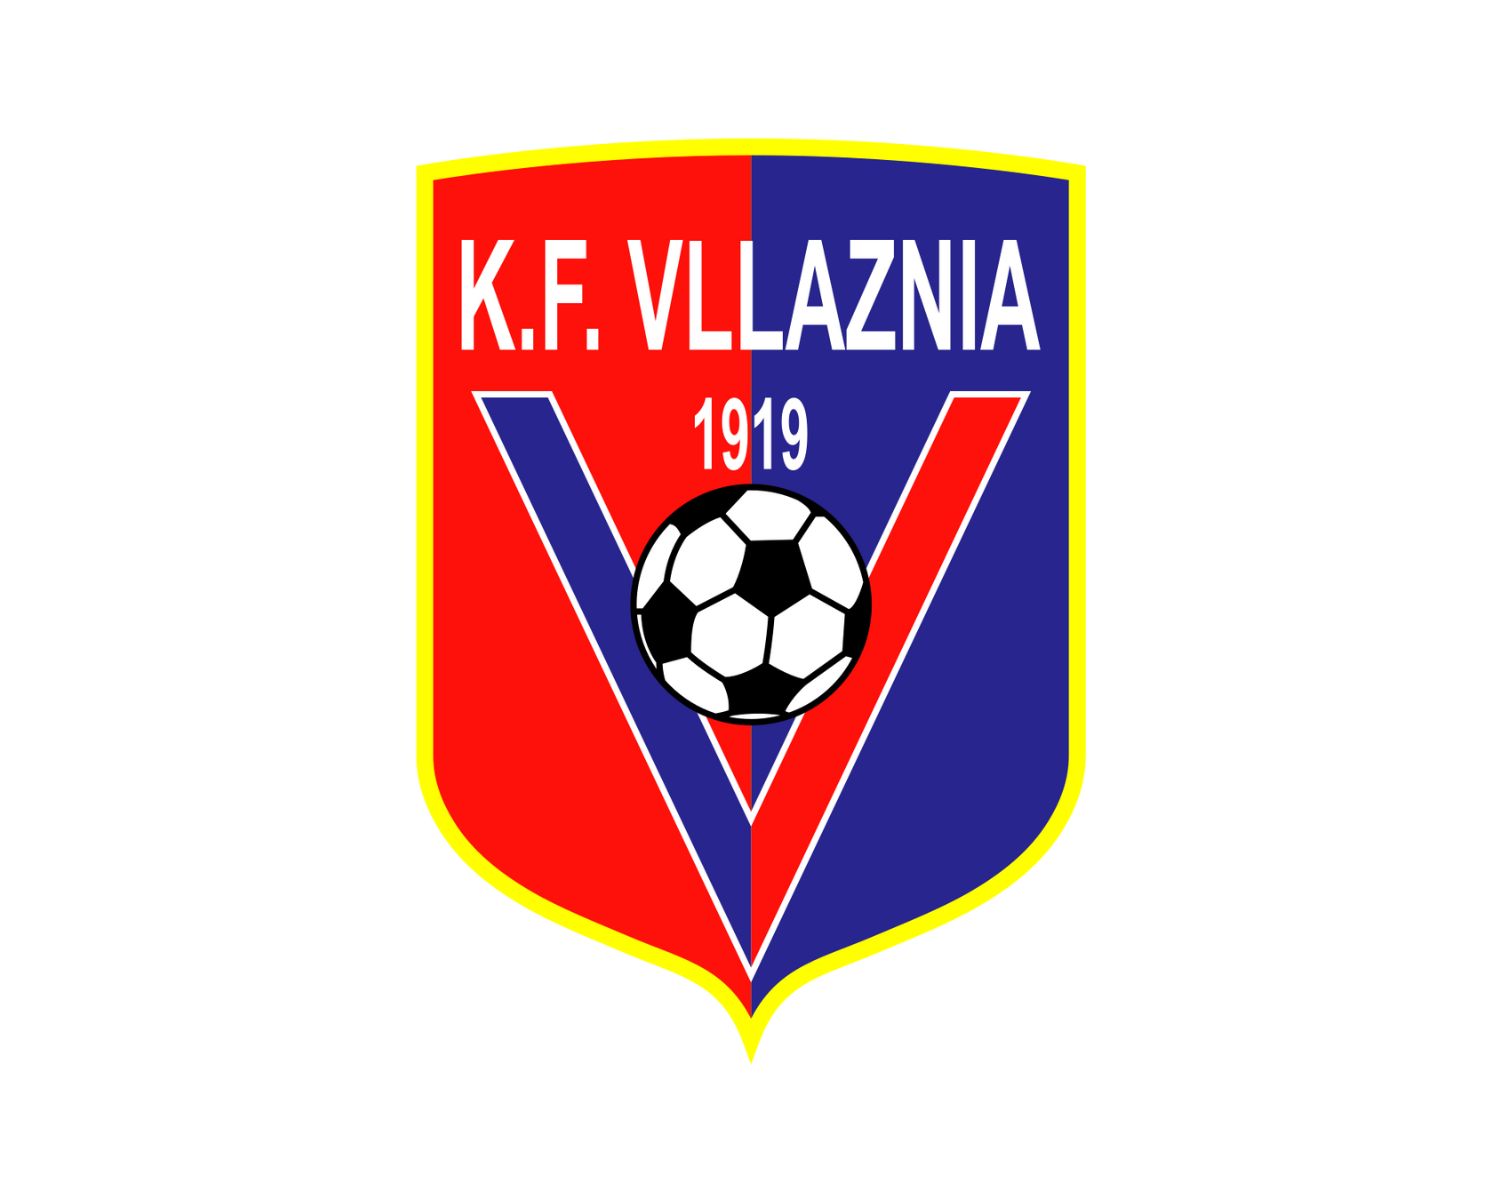 KF Tirana Academy